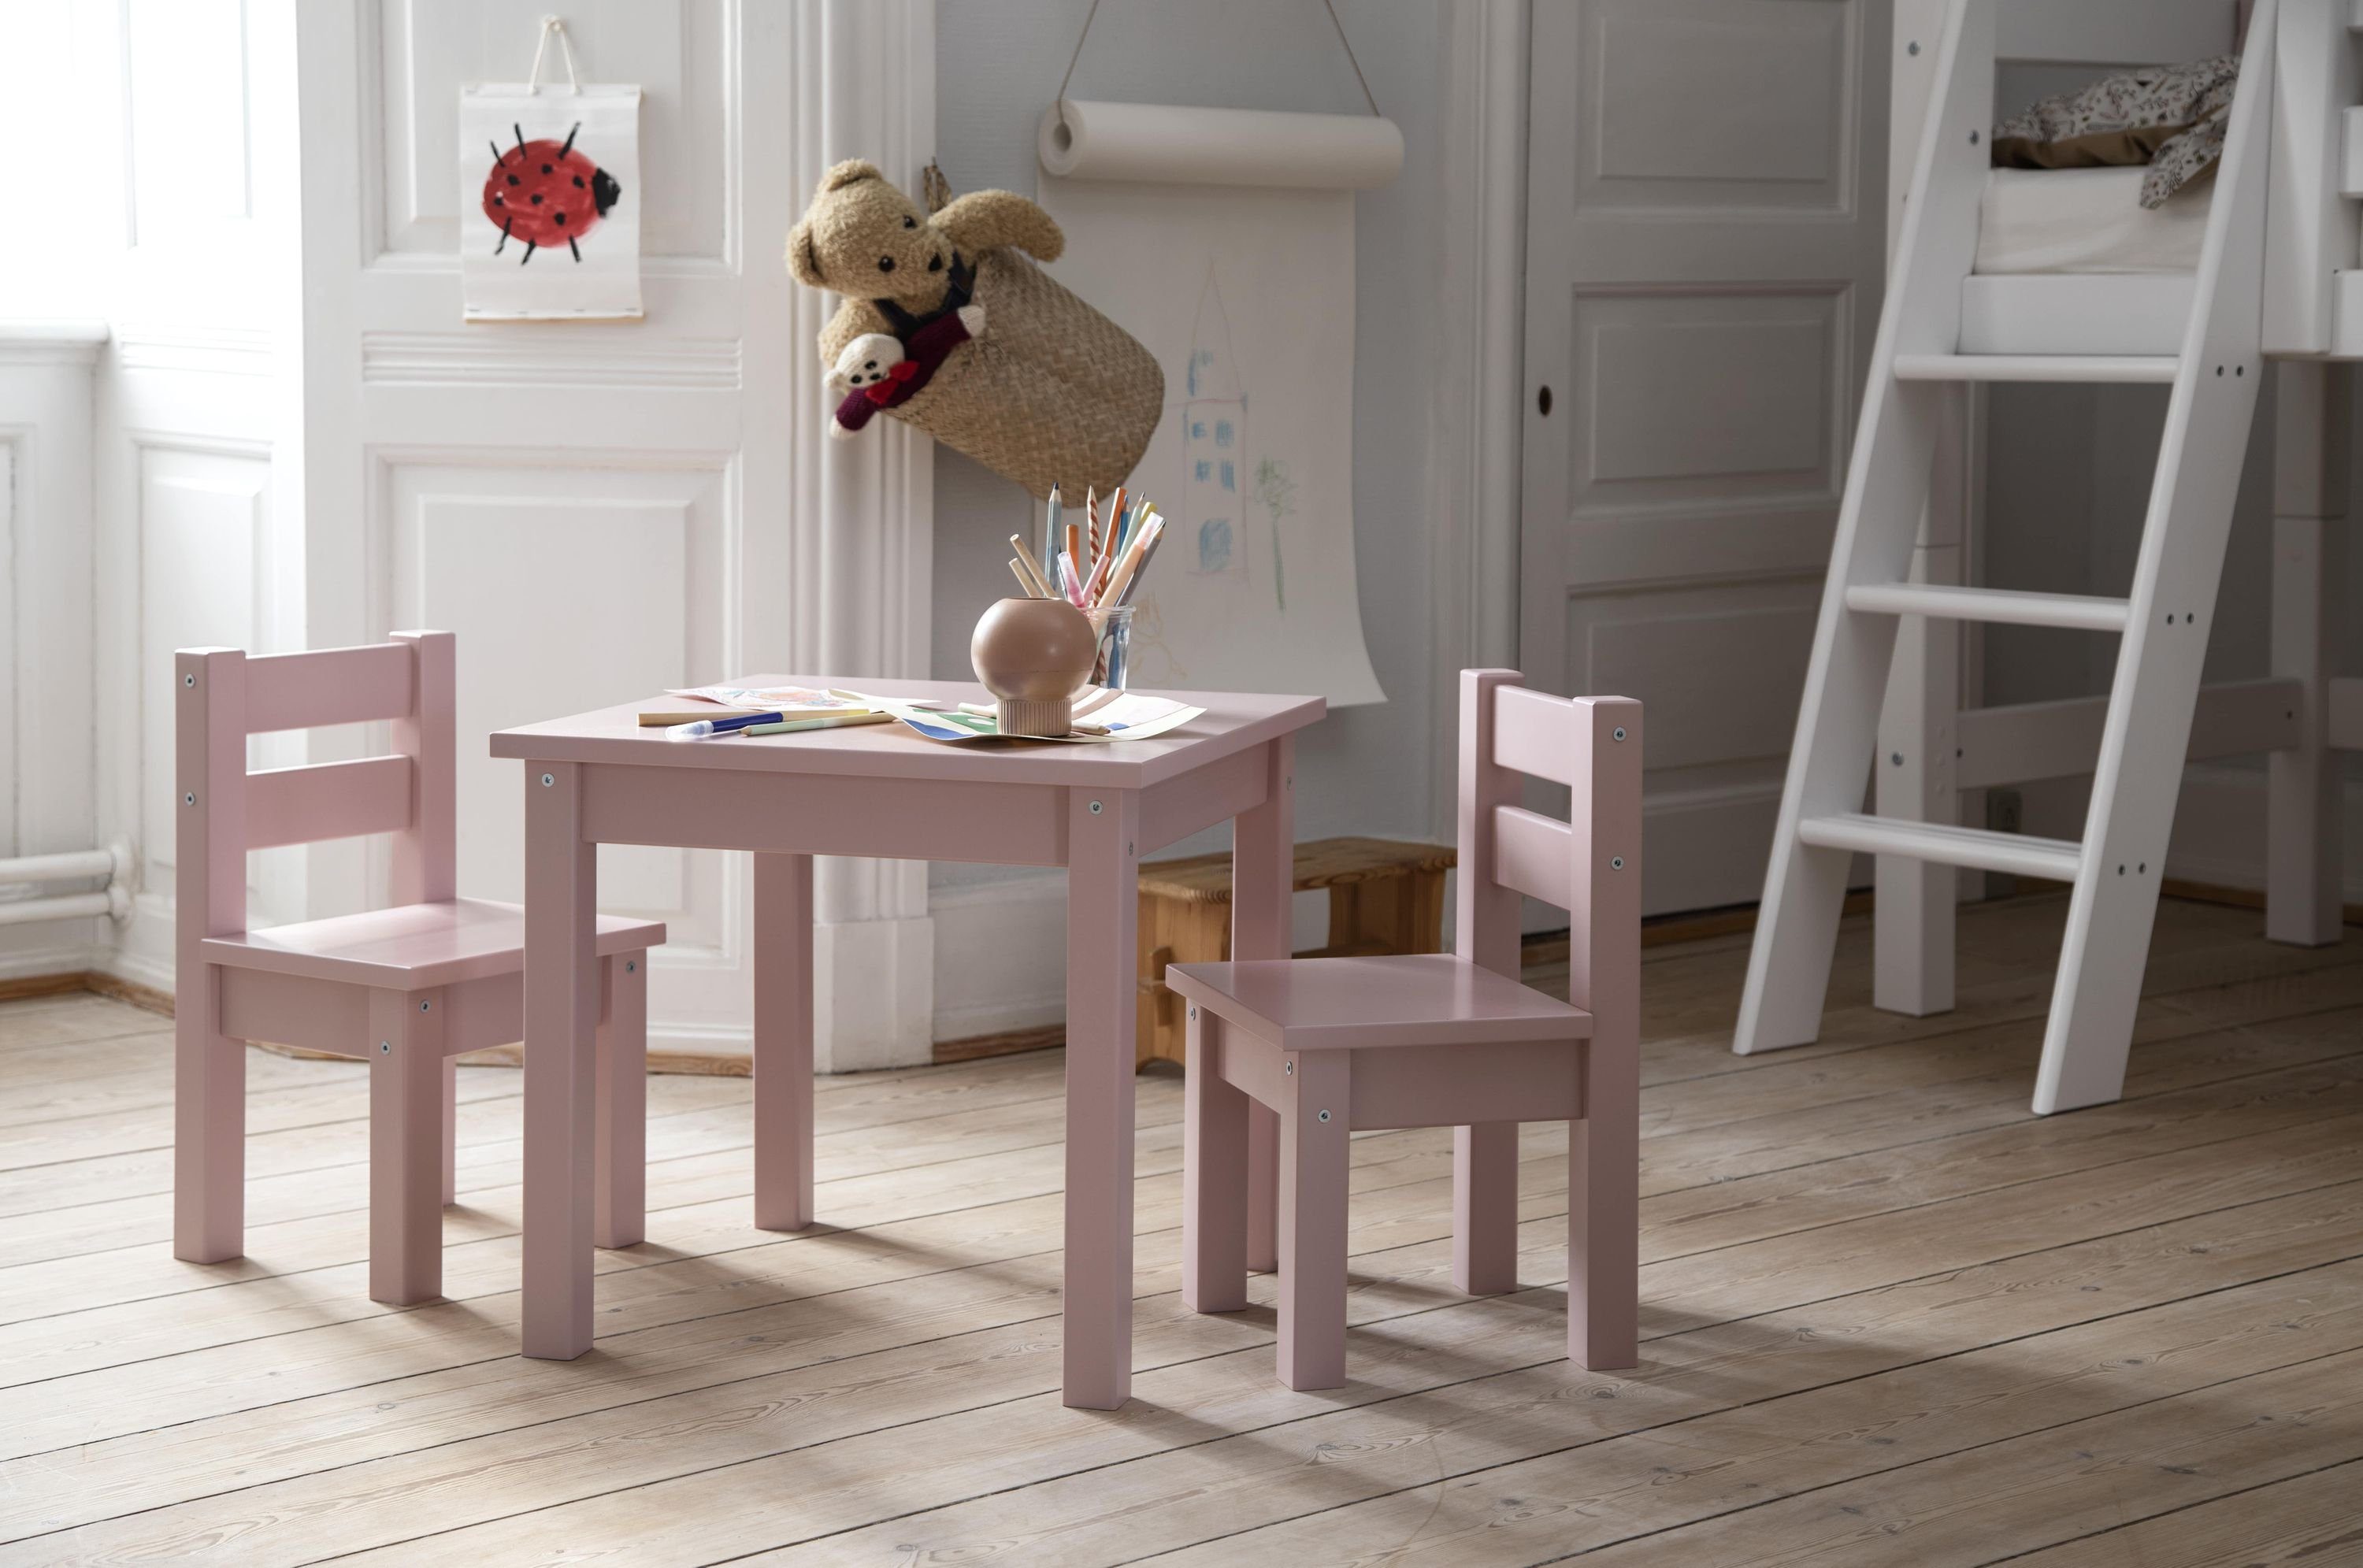 Hoppekids Kindertisch MADS Rosa/Pink Kindertisch